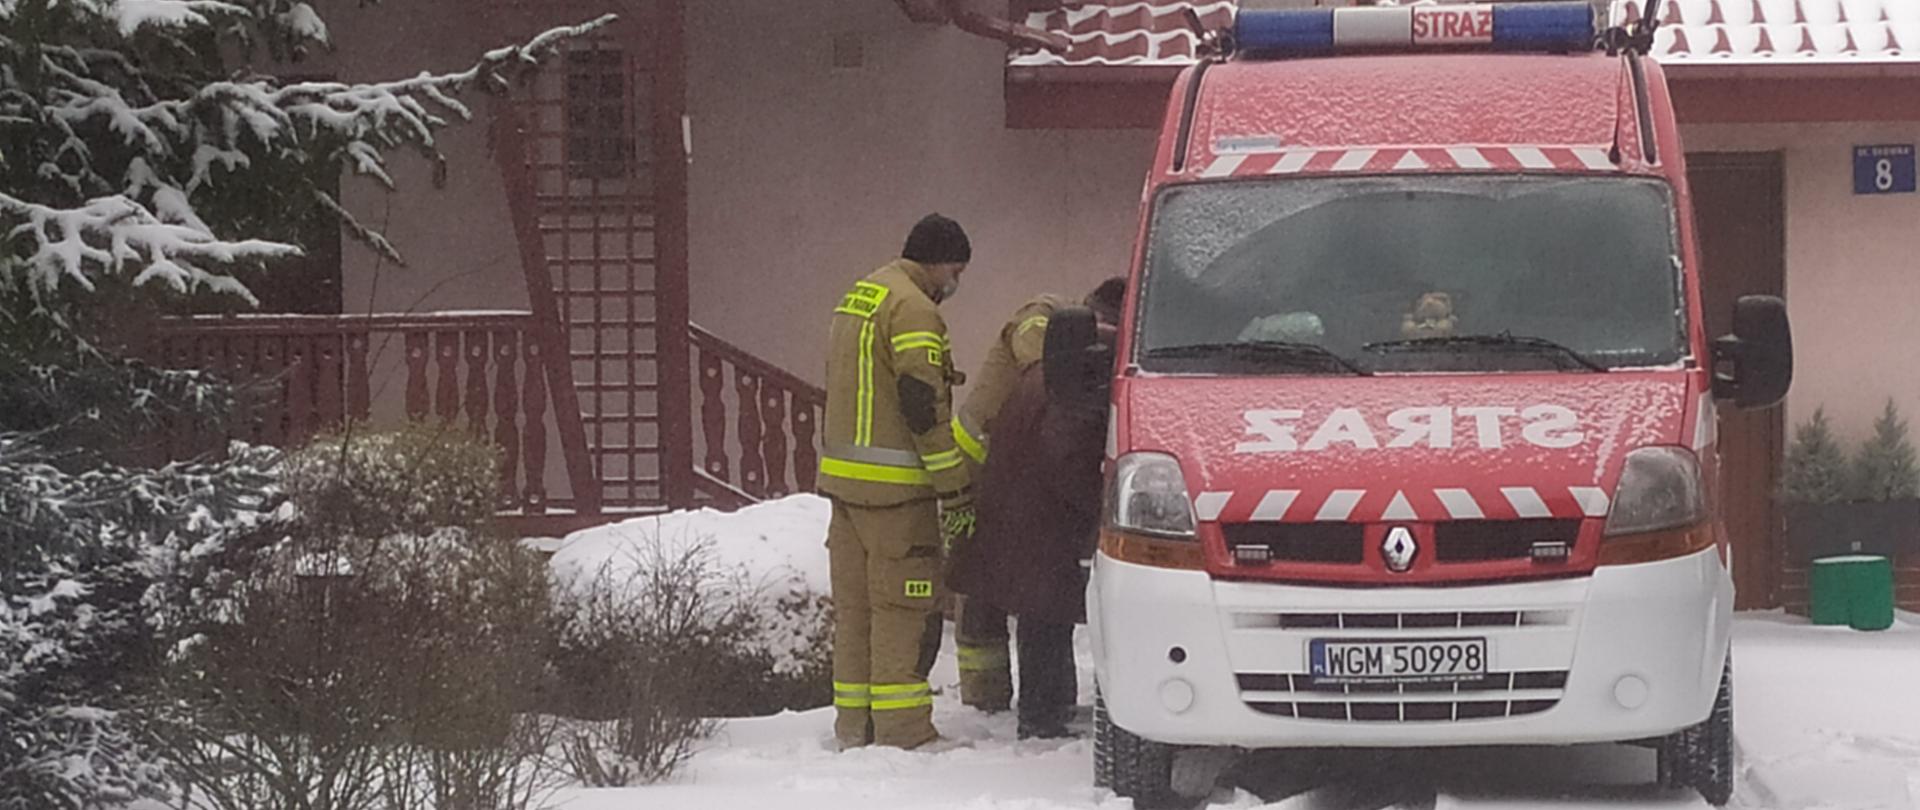 Dwóch strażaków pomaga starszej kobiecie wsiąść do lekkiego samochodu ratownictwa technicznego typu bus w kolorze czerwonym z białym zderzakiem należącego do OSP Żelechów, w tle widoczny budynek jednorodzinny. 